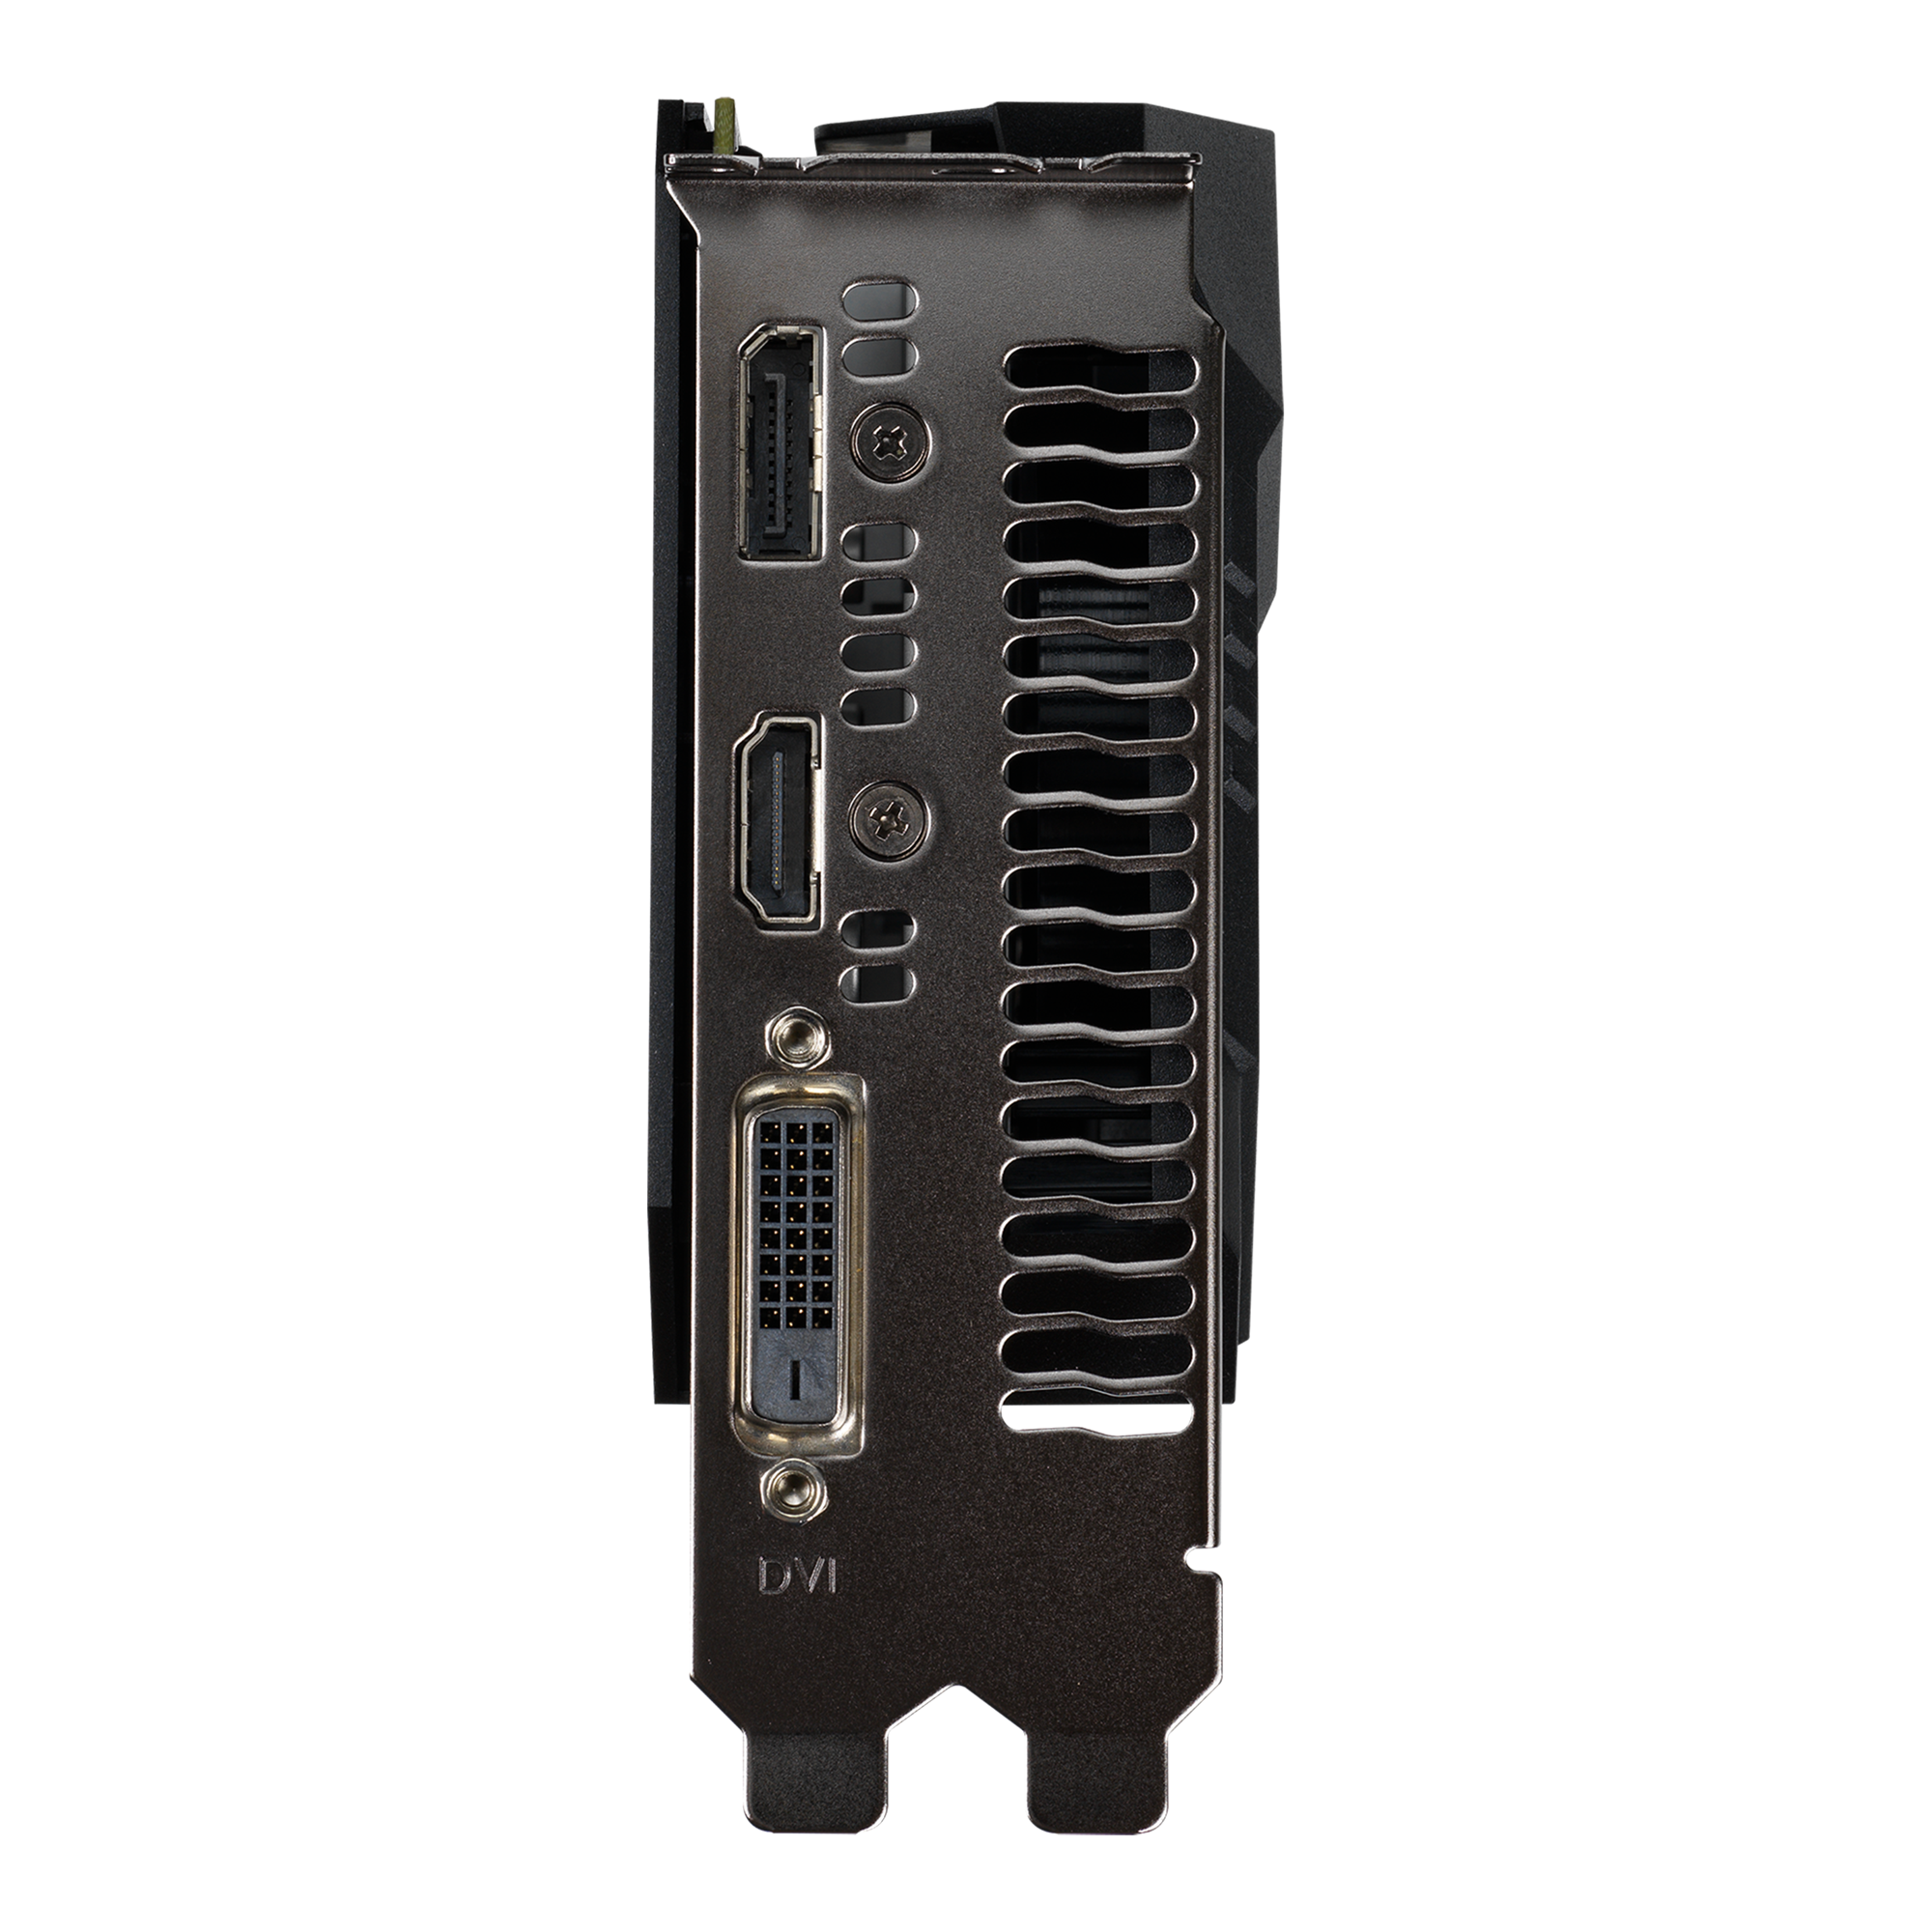 ASUS GeForce GTX 1650 TUFgaming 品